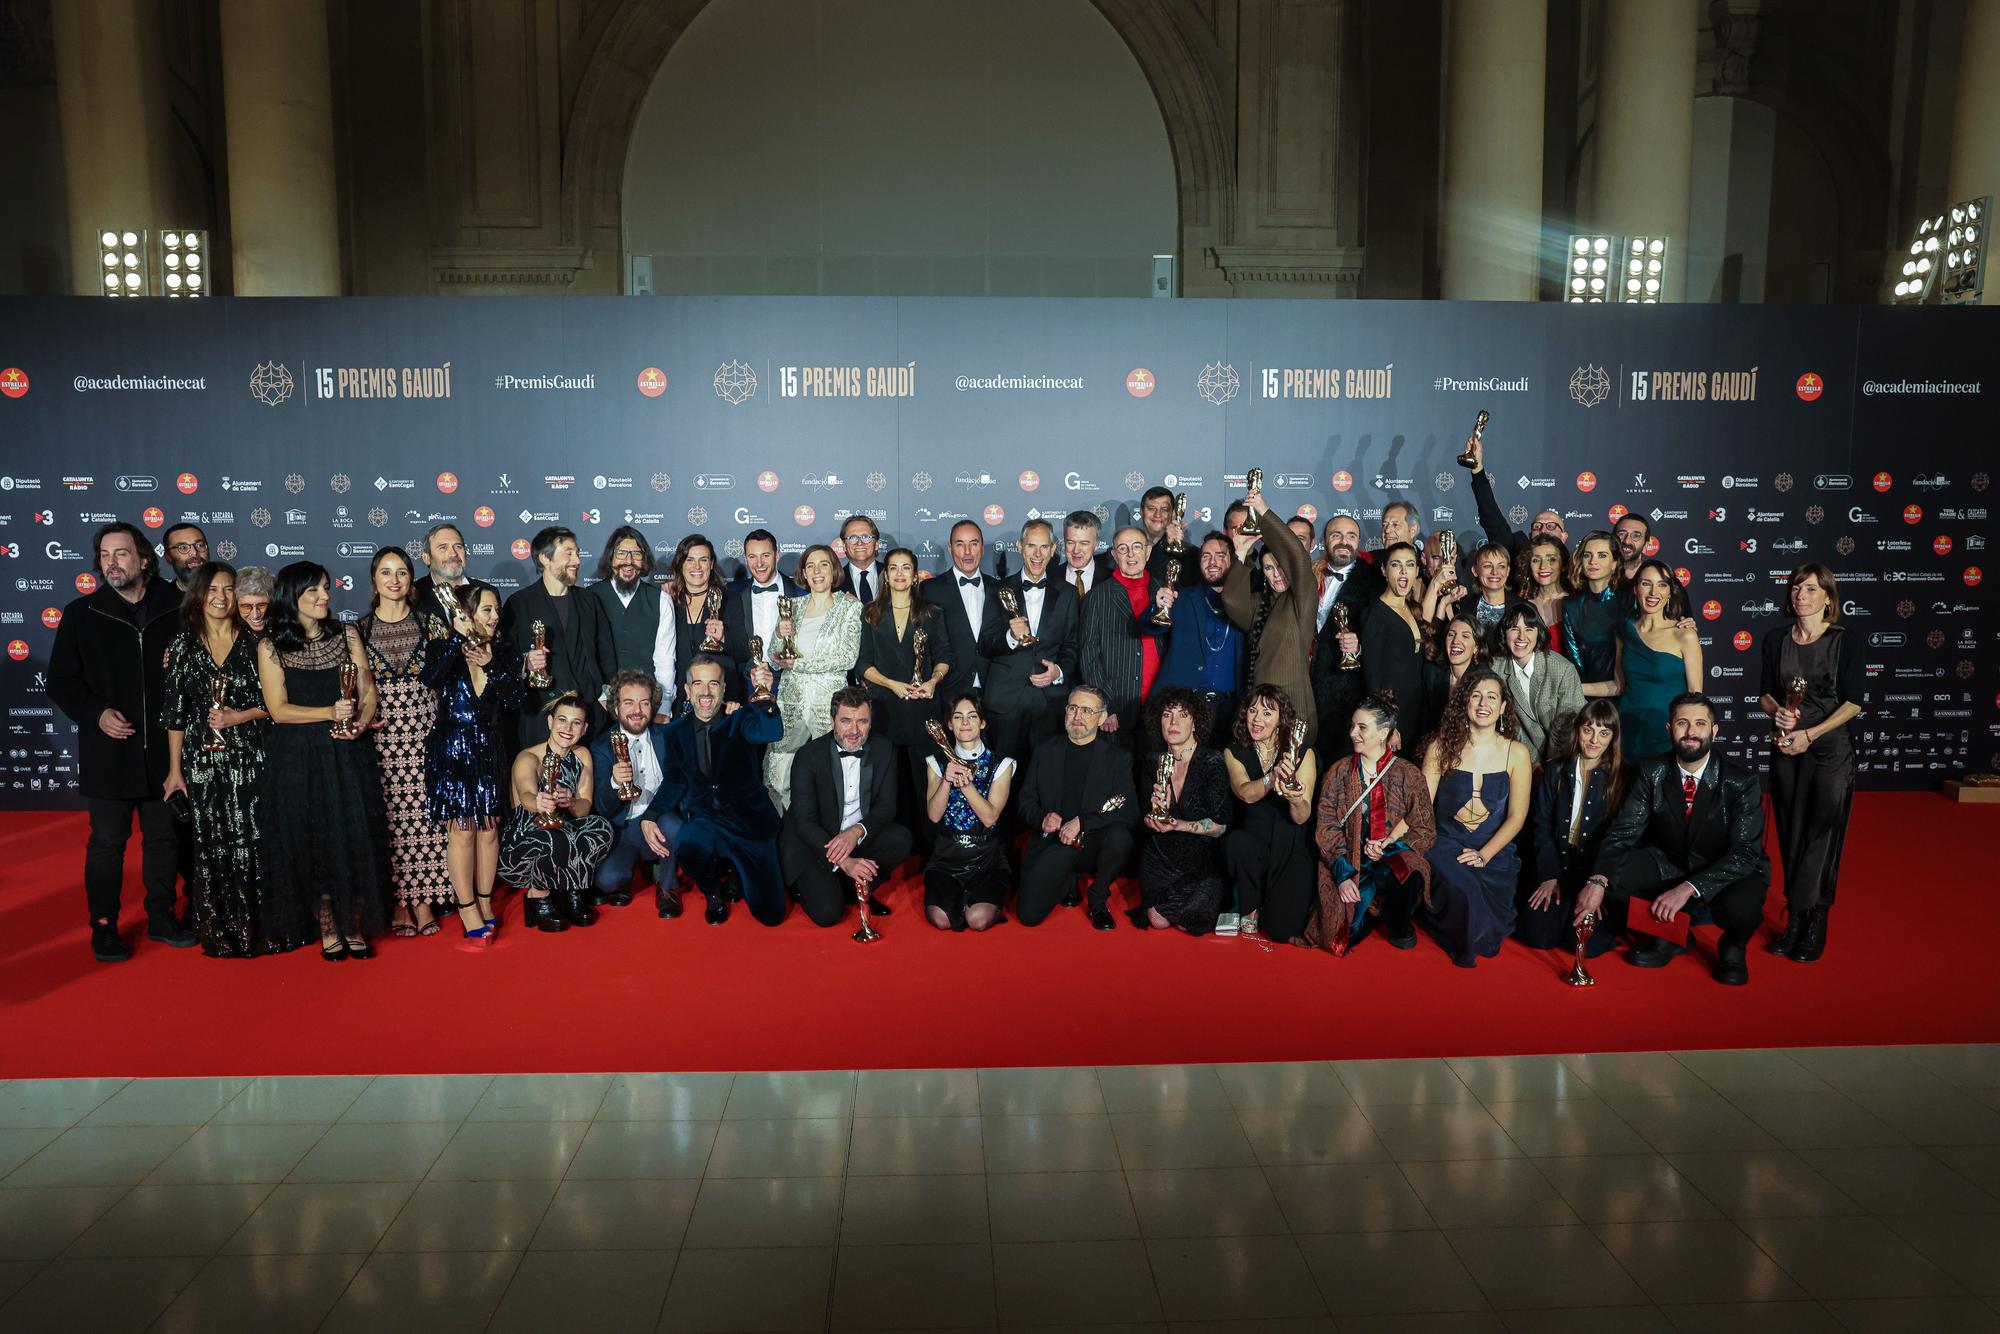 Les millors imatges de la gala dels premis Gaudí 2023